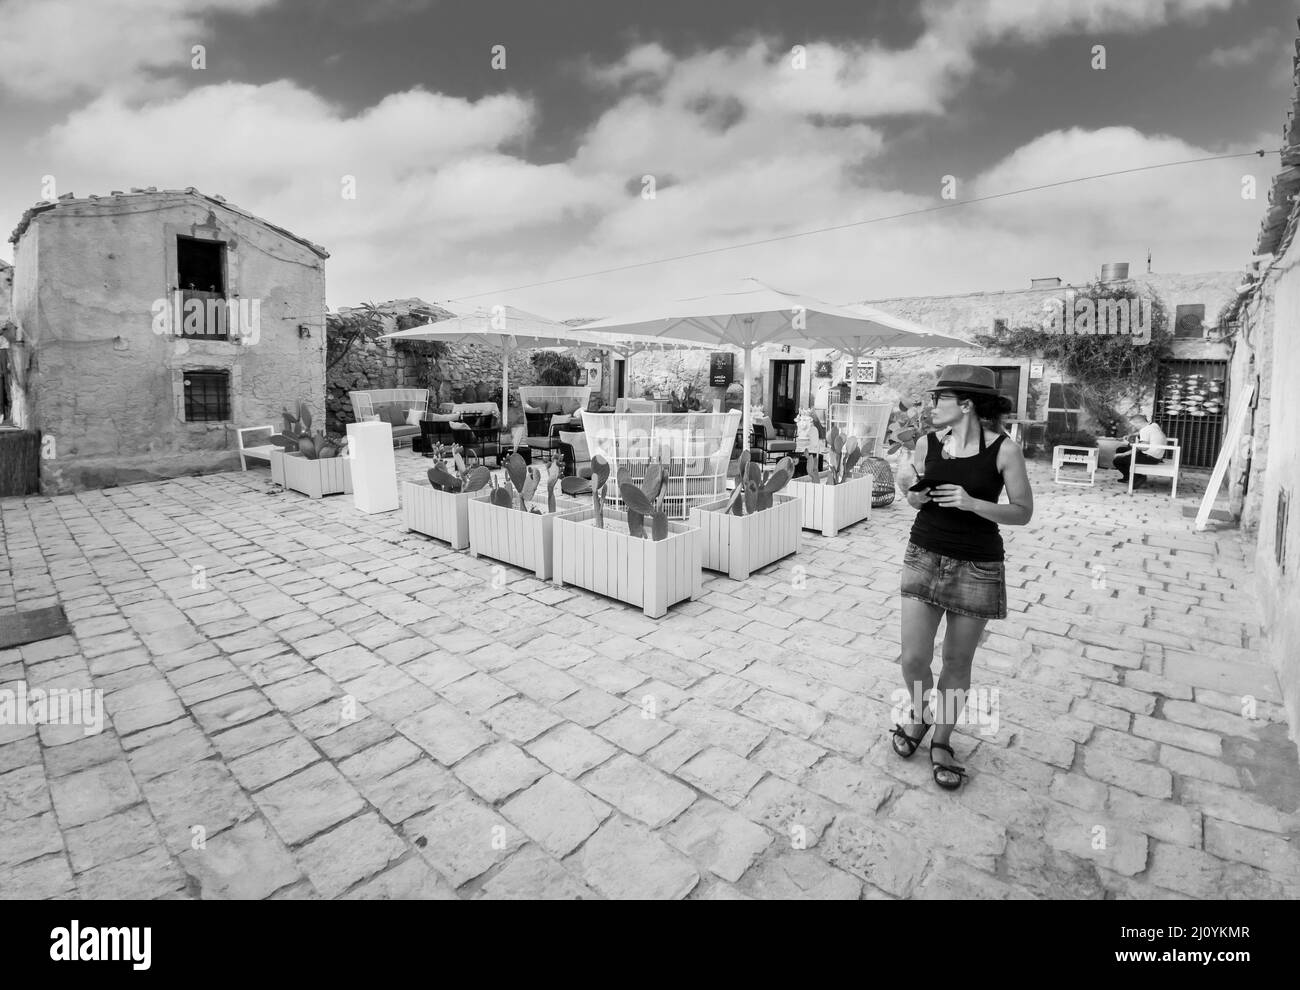 Marzamemi (Sicilia, Italia) - un piccolo villaggio di pescatori con un imponente centro storico in provincia di Siracusa, isola di Sicilia, estremo sud Italia Foto Stock